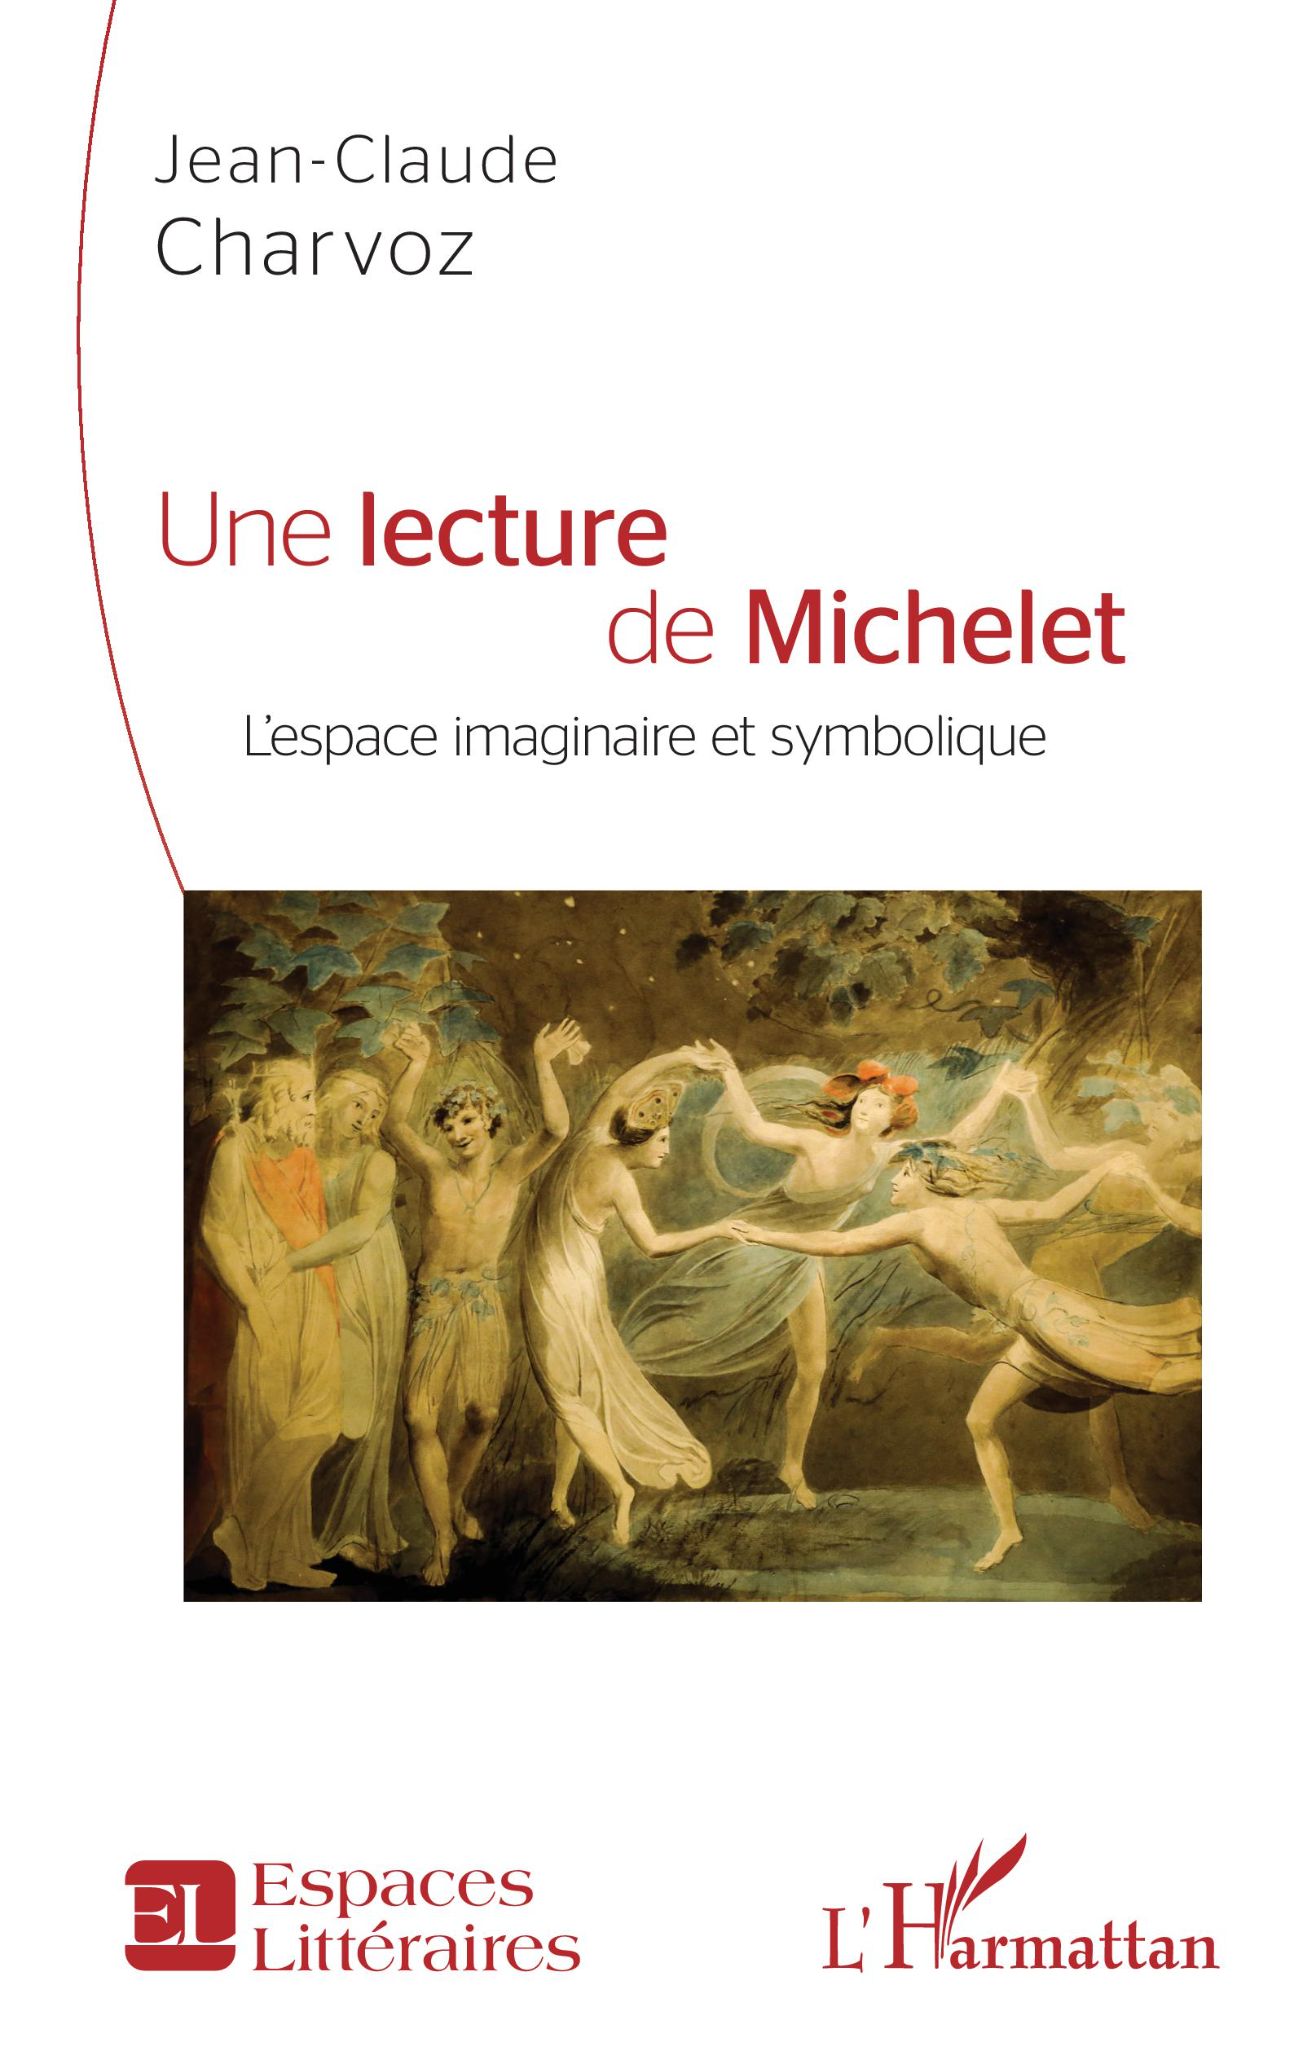 Jean-Claude Charvoz, Une lecture de Michelet